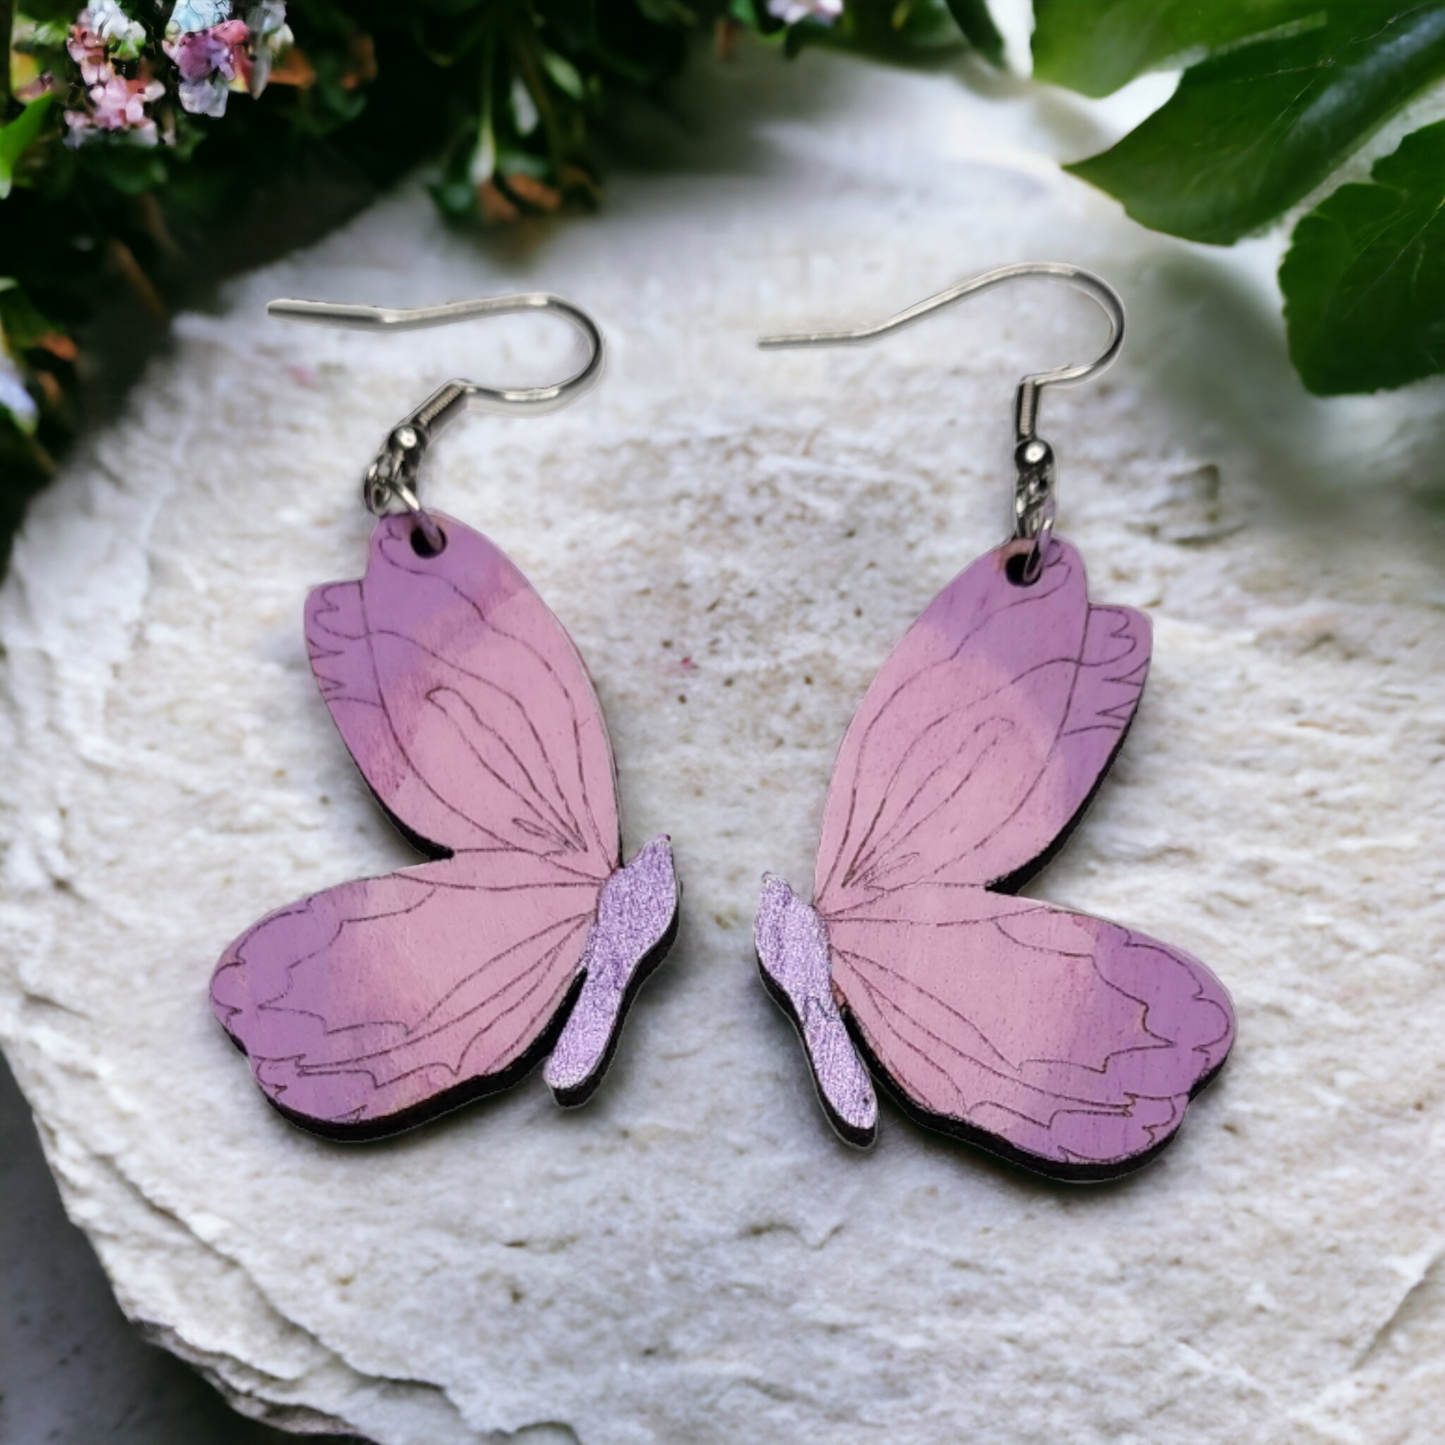 Purple Butterfly Dangle Earring Stainless Steel Hooks